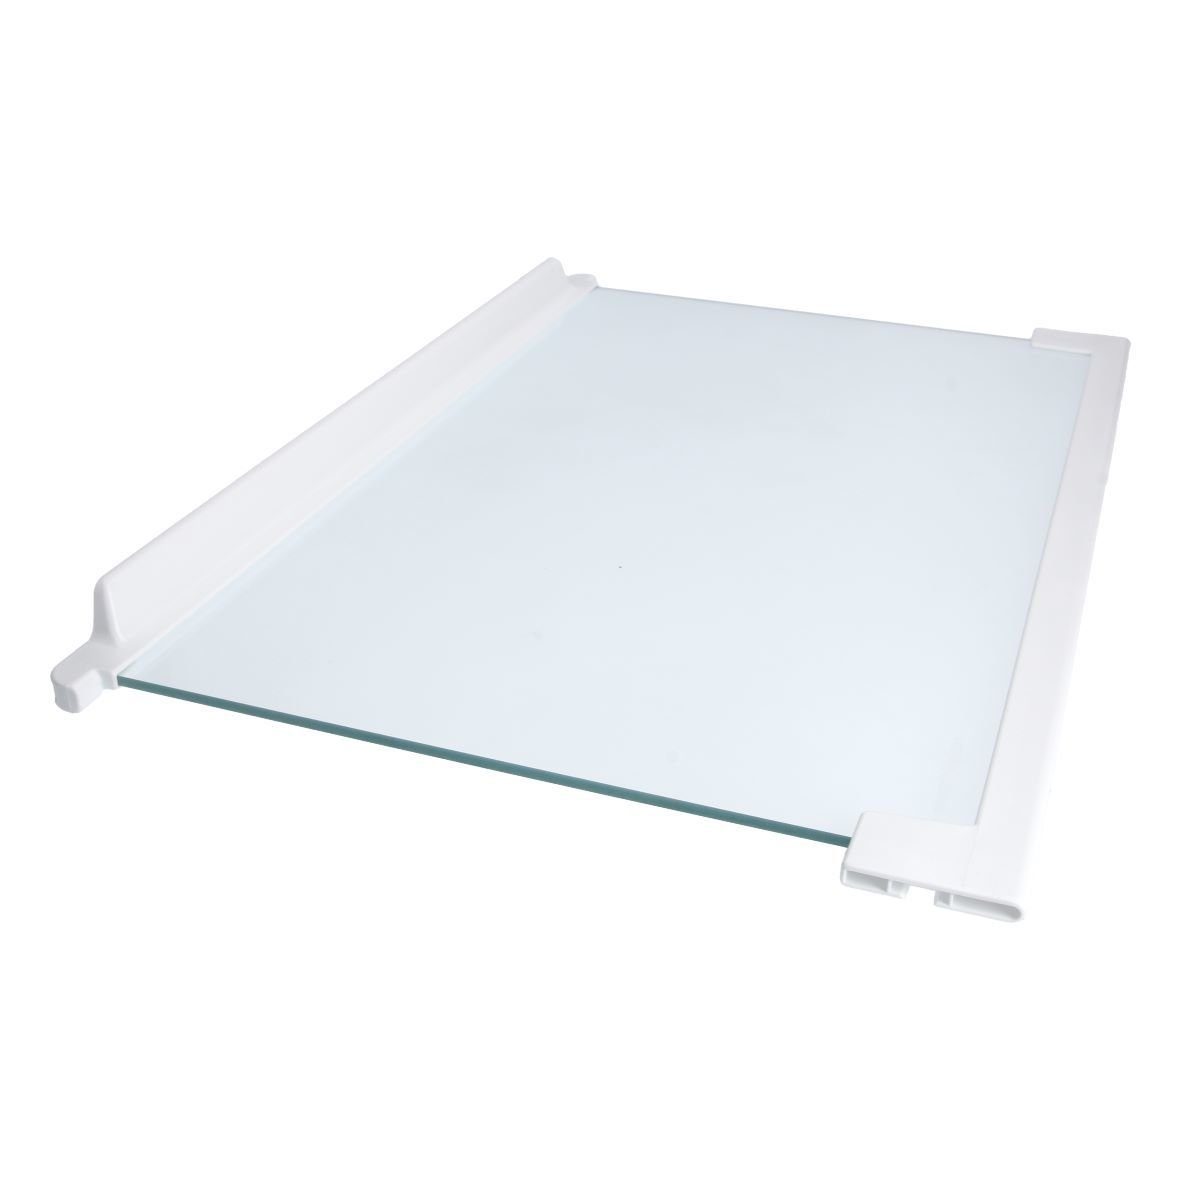 Gefriergerät easyPART / Glasplatte Electrolux Einlegeboden 2251639205 wie Kühlteil, Kühlschrank